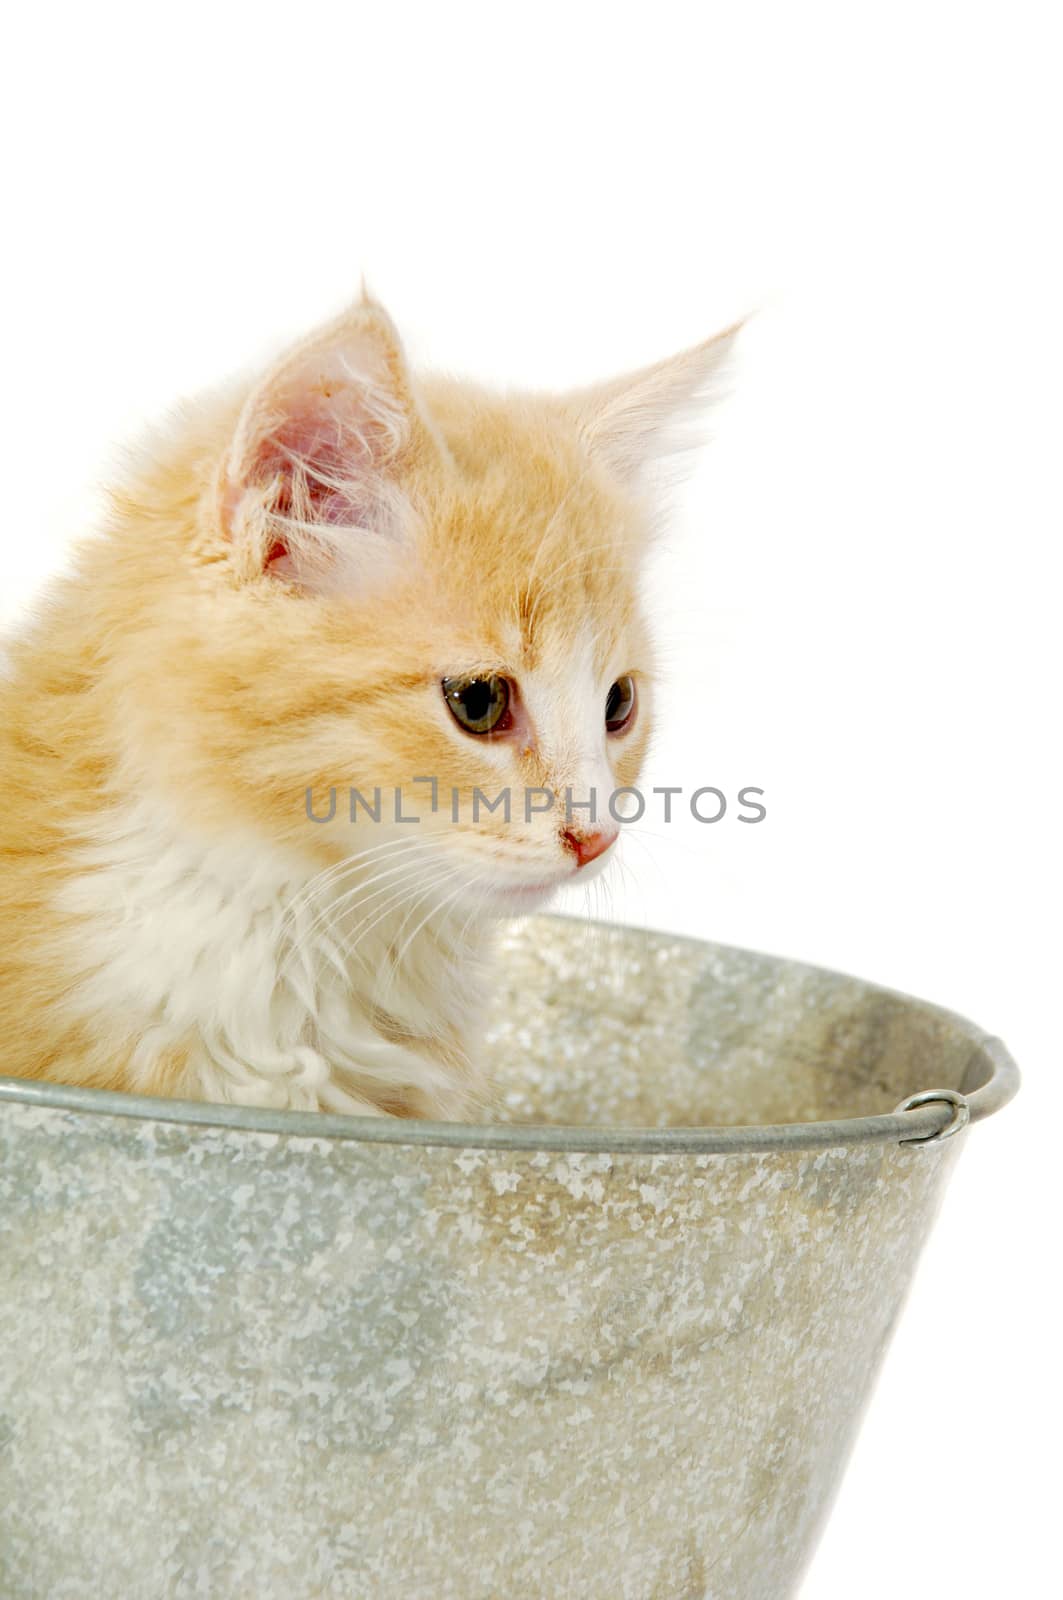 Kitten in bucket by cfoto